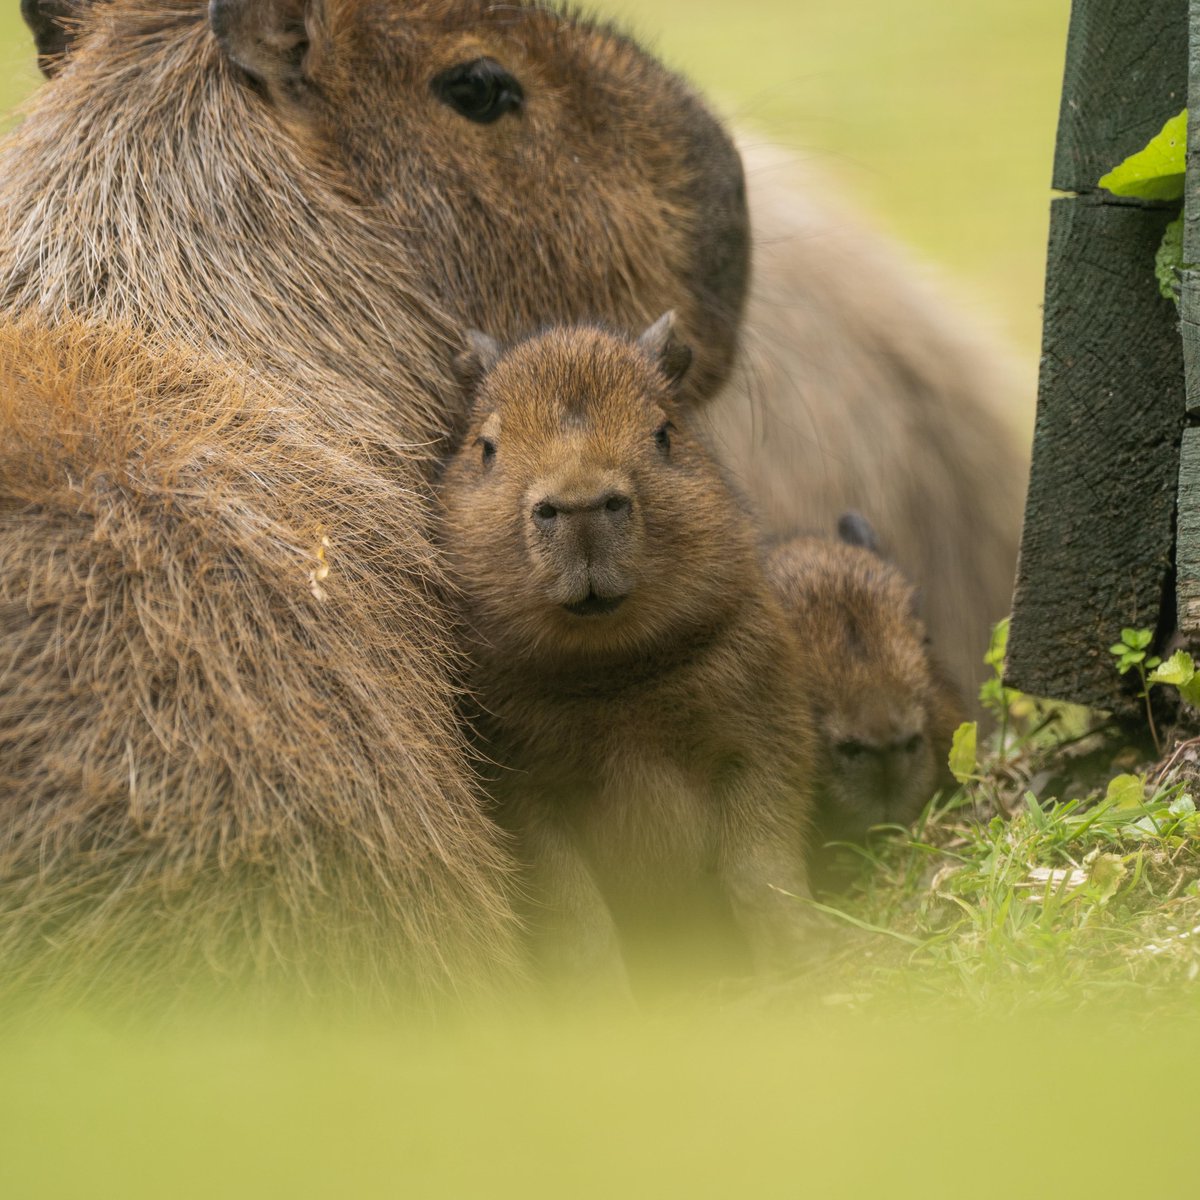 Baby capybara update - still cute!😍

#capybara #wildlife #animals #cuteanimals